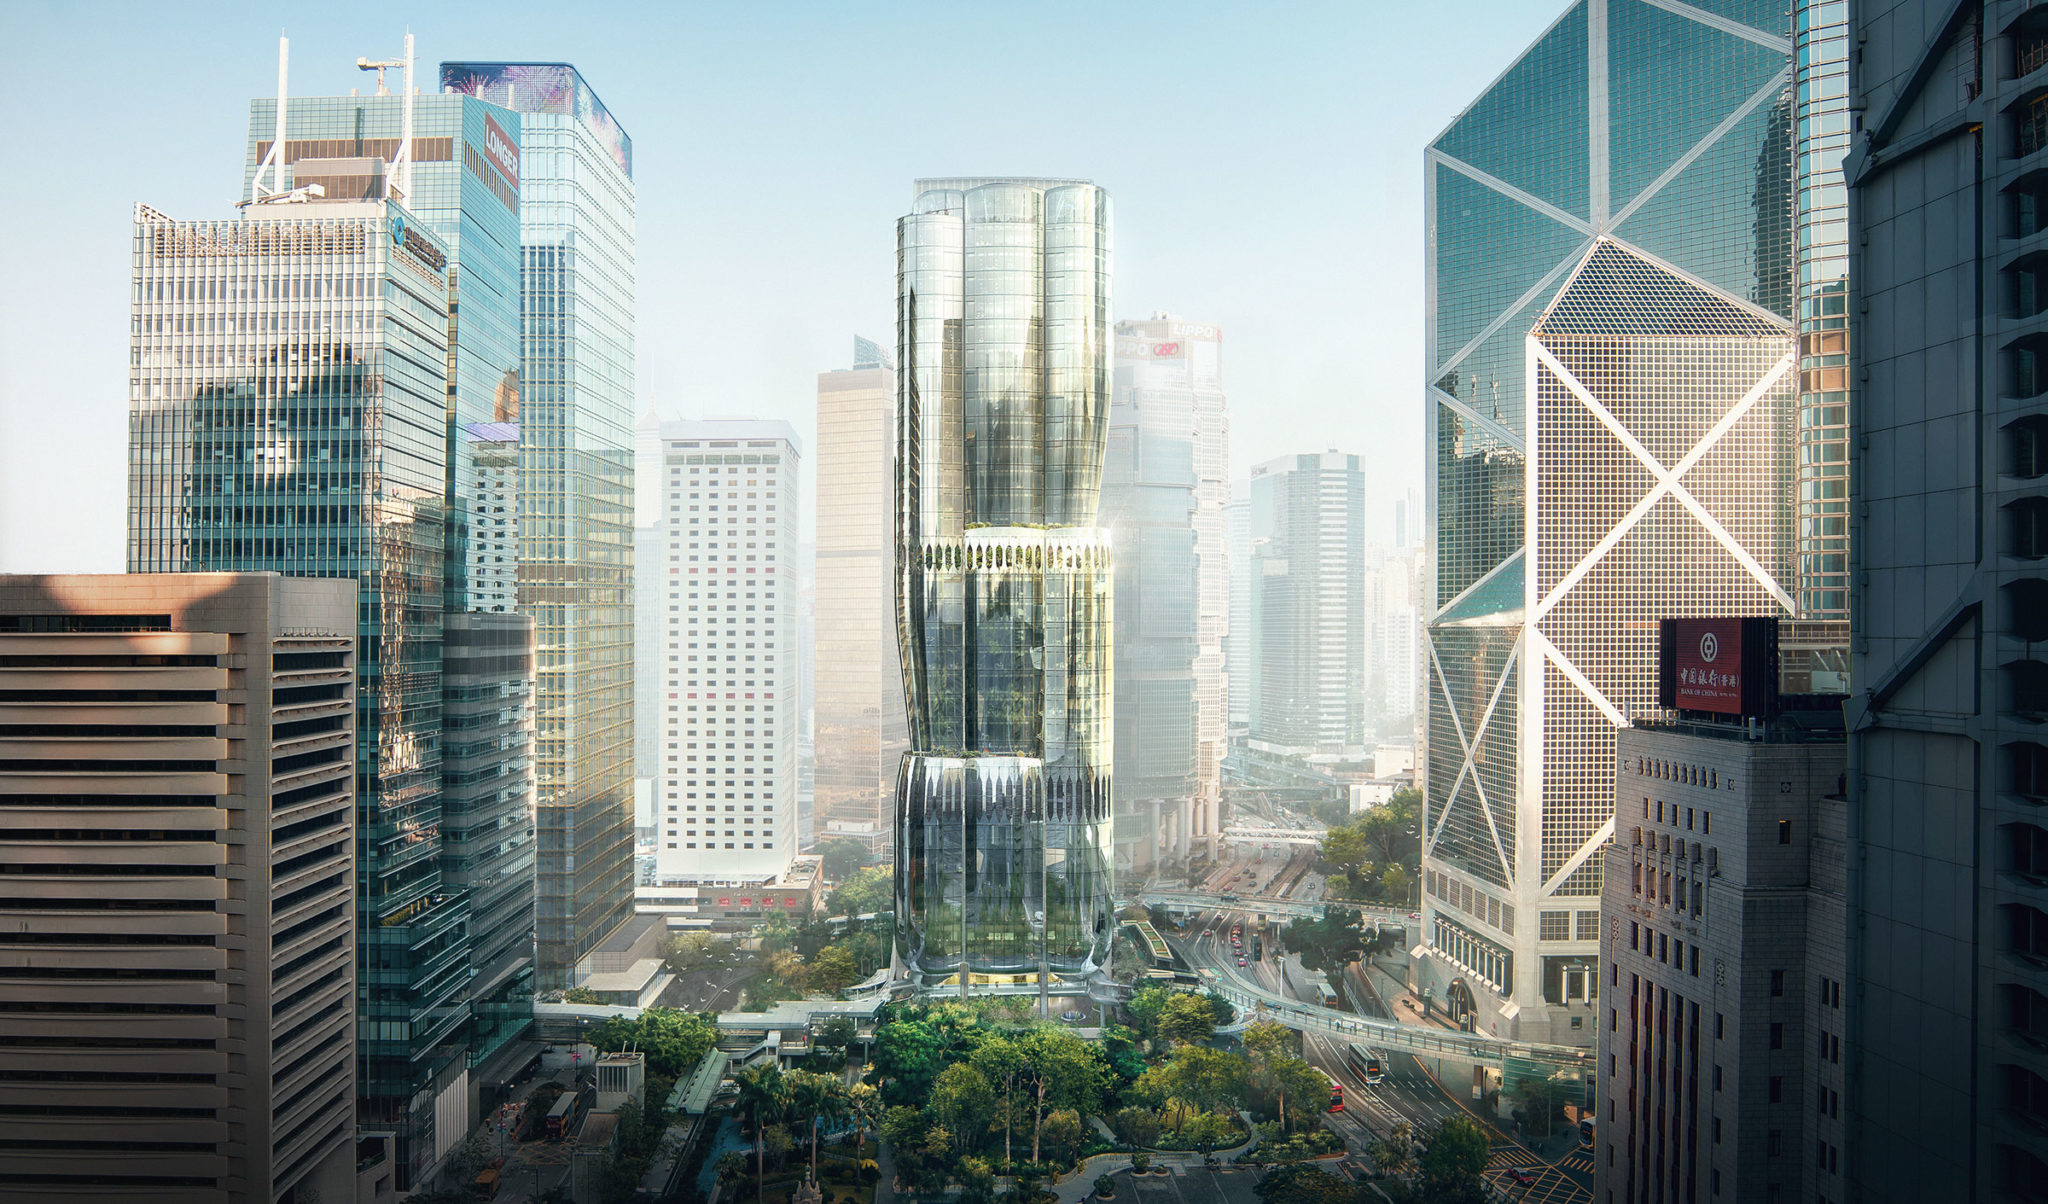 ザハ ハディド アーキテクツが計画している 香港の36階建ての高層ビル 2 Murray Road 香港蘭のつぼみを再解釈した有機的な外観は 隣接する公園との調和を意図し 環境性能も考慮 Architecturephoto Net